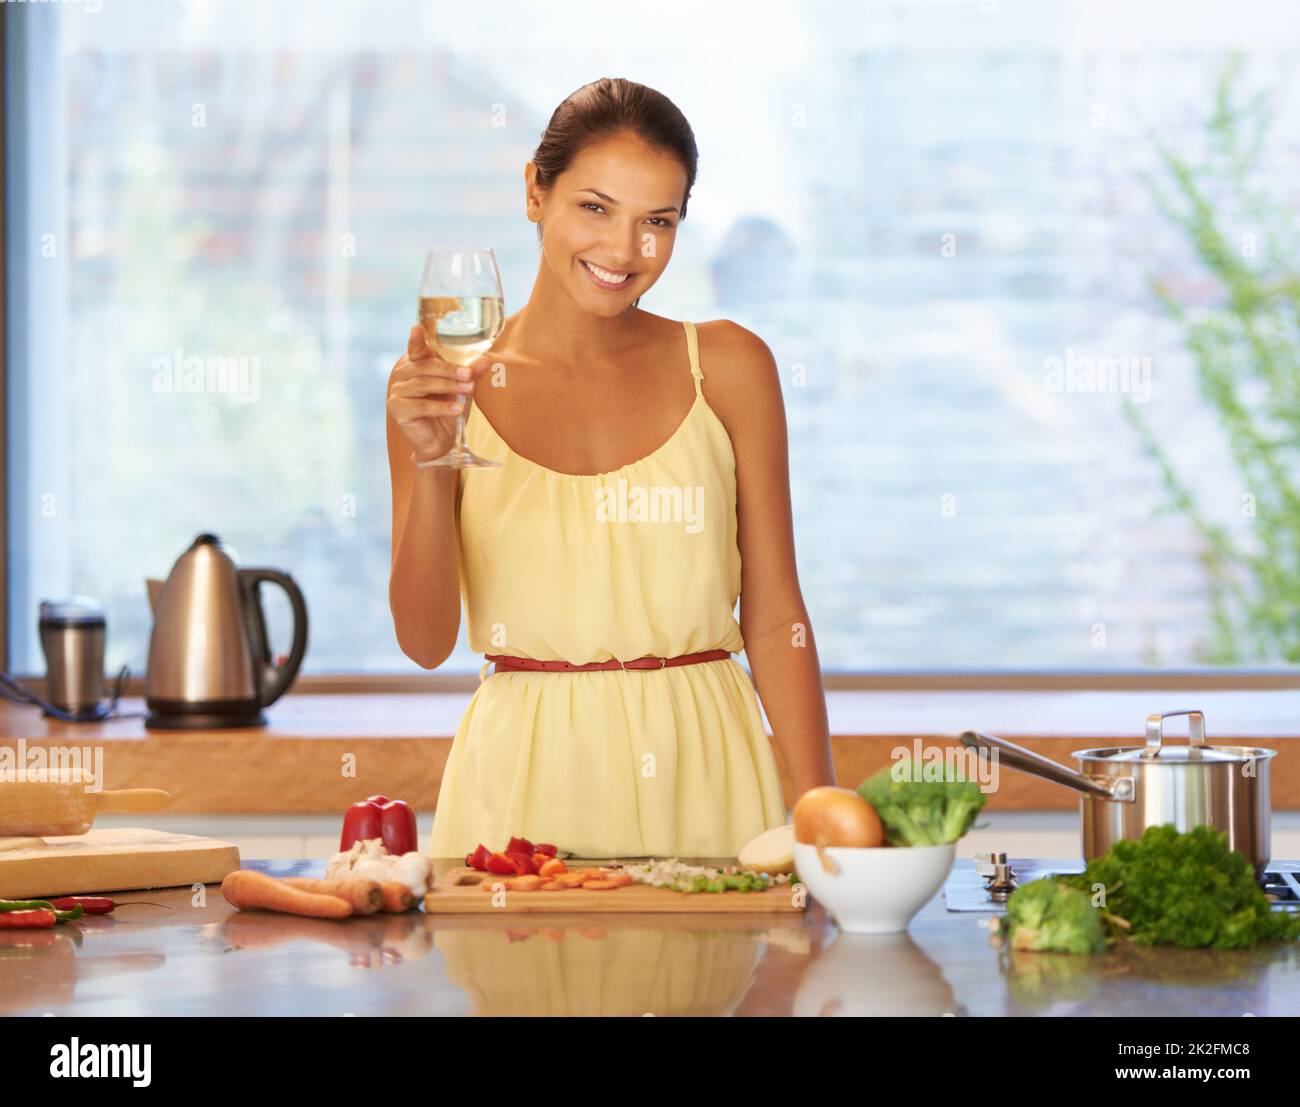 Prost zu gutem Essen. Eine junge Frau, die beim Kochen ein Glas Wein in der Hand hält. Stockfoto